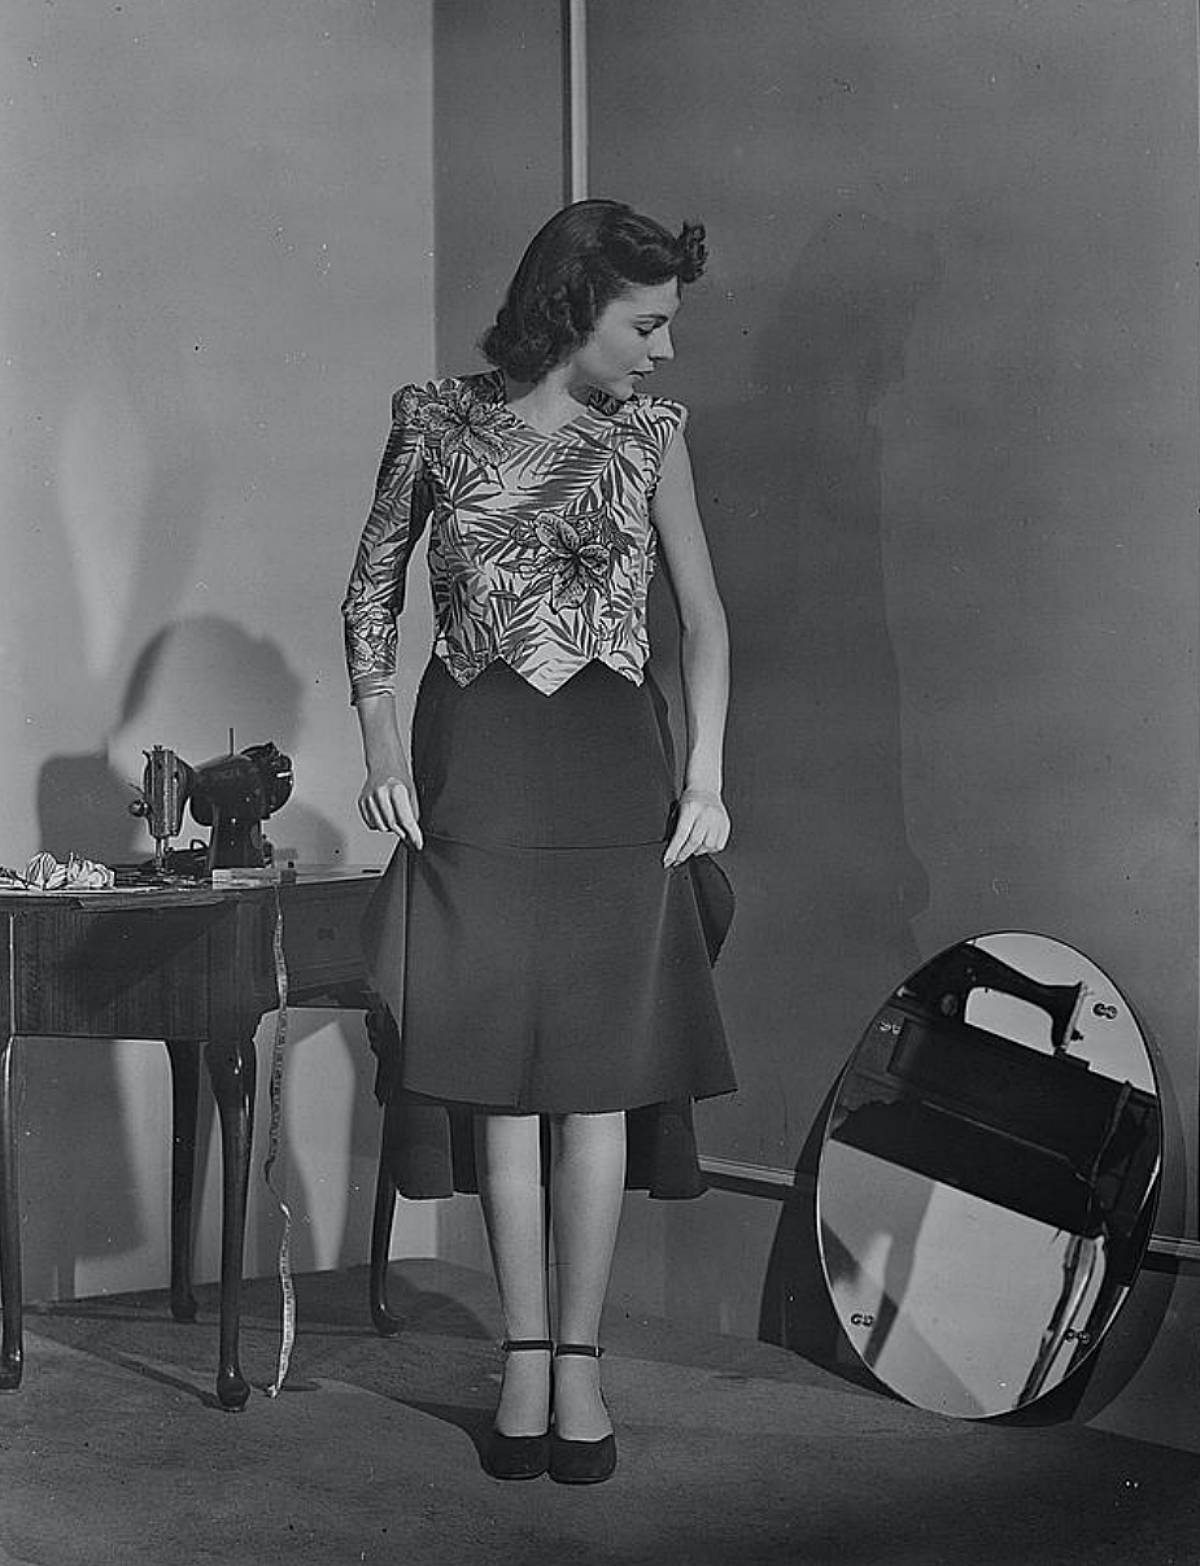 1943 dressmaking during wartime restrictions